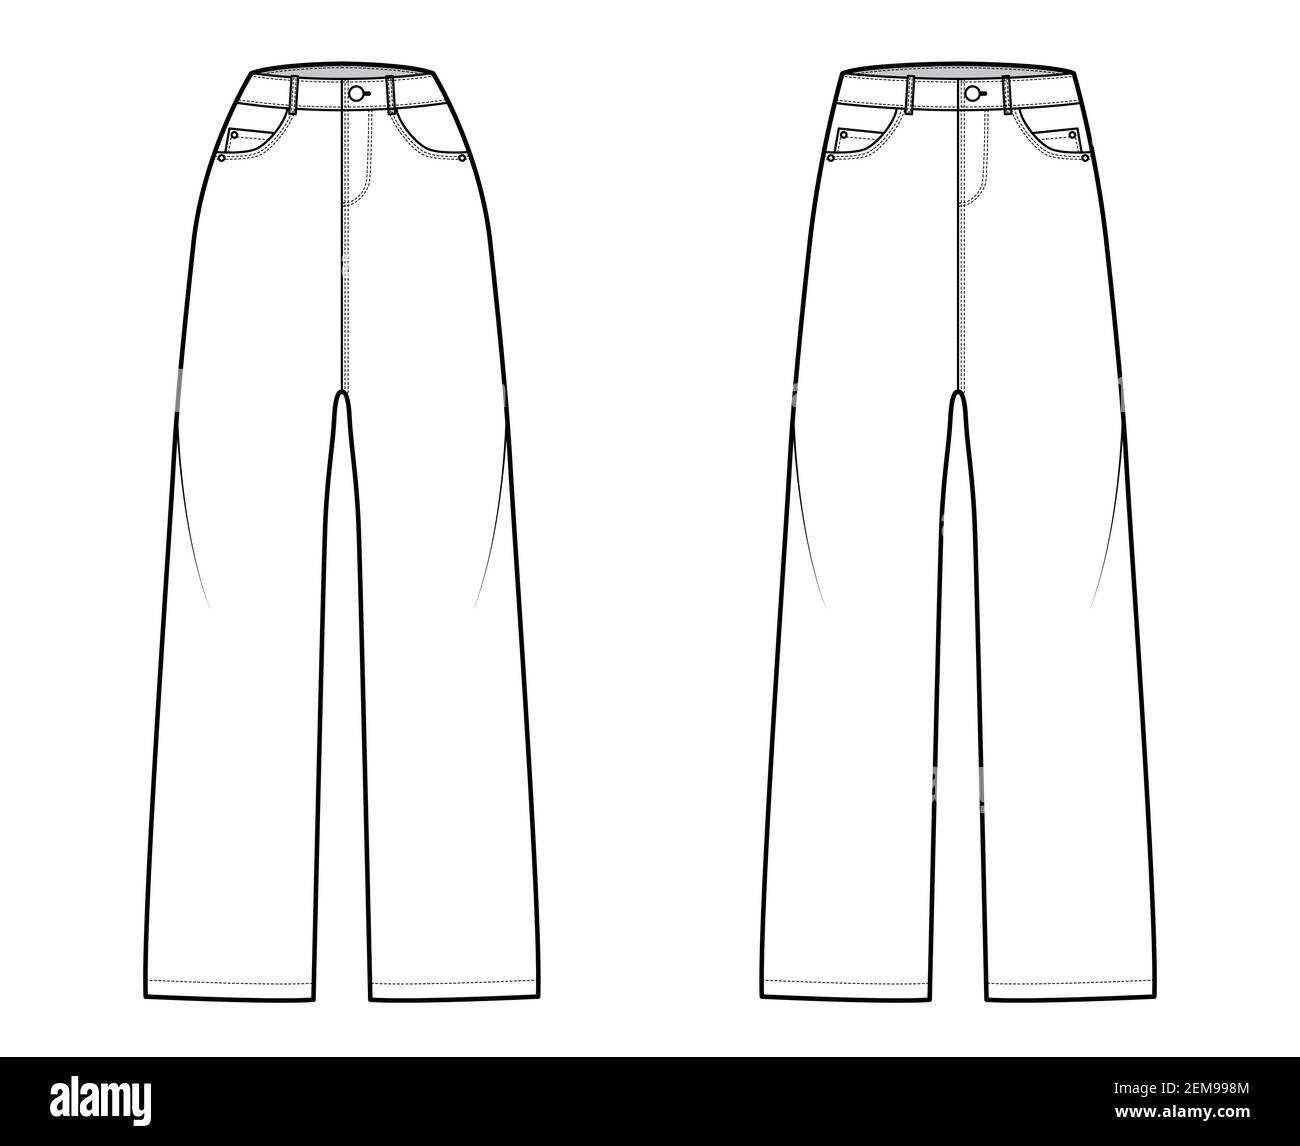 Ensemble de pantalons en Jean Baggy illustration technique de la mode avec  toute la longueur, taille normale basse, taille haute, 5 poches, passants de  ceinture. Modèle avant à fond plat, couleur blanche.